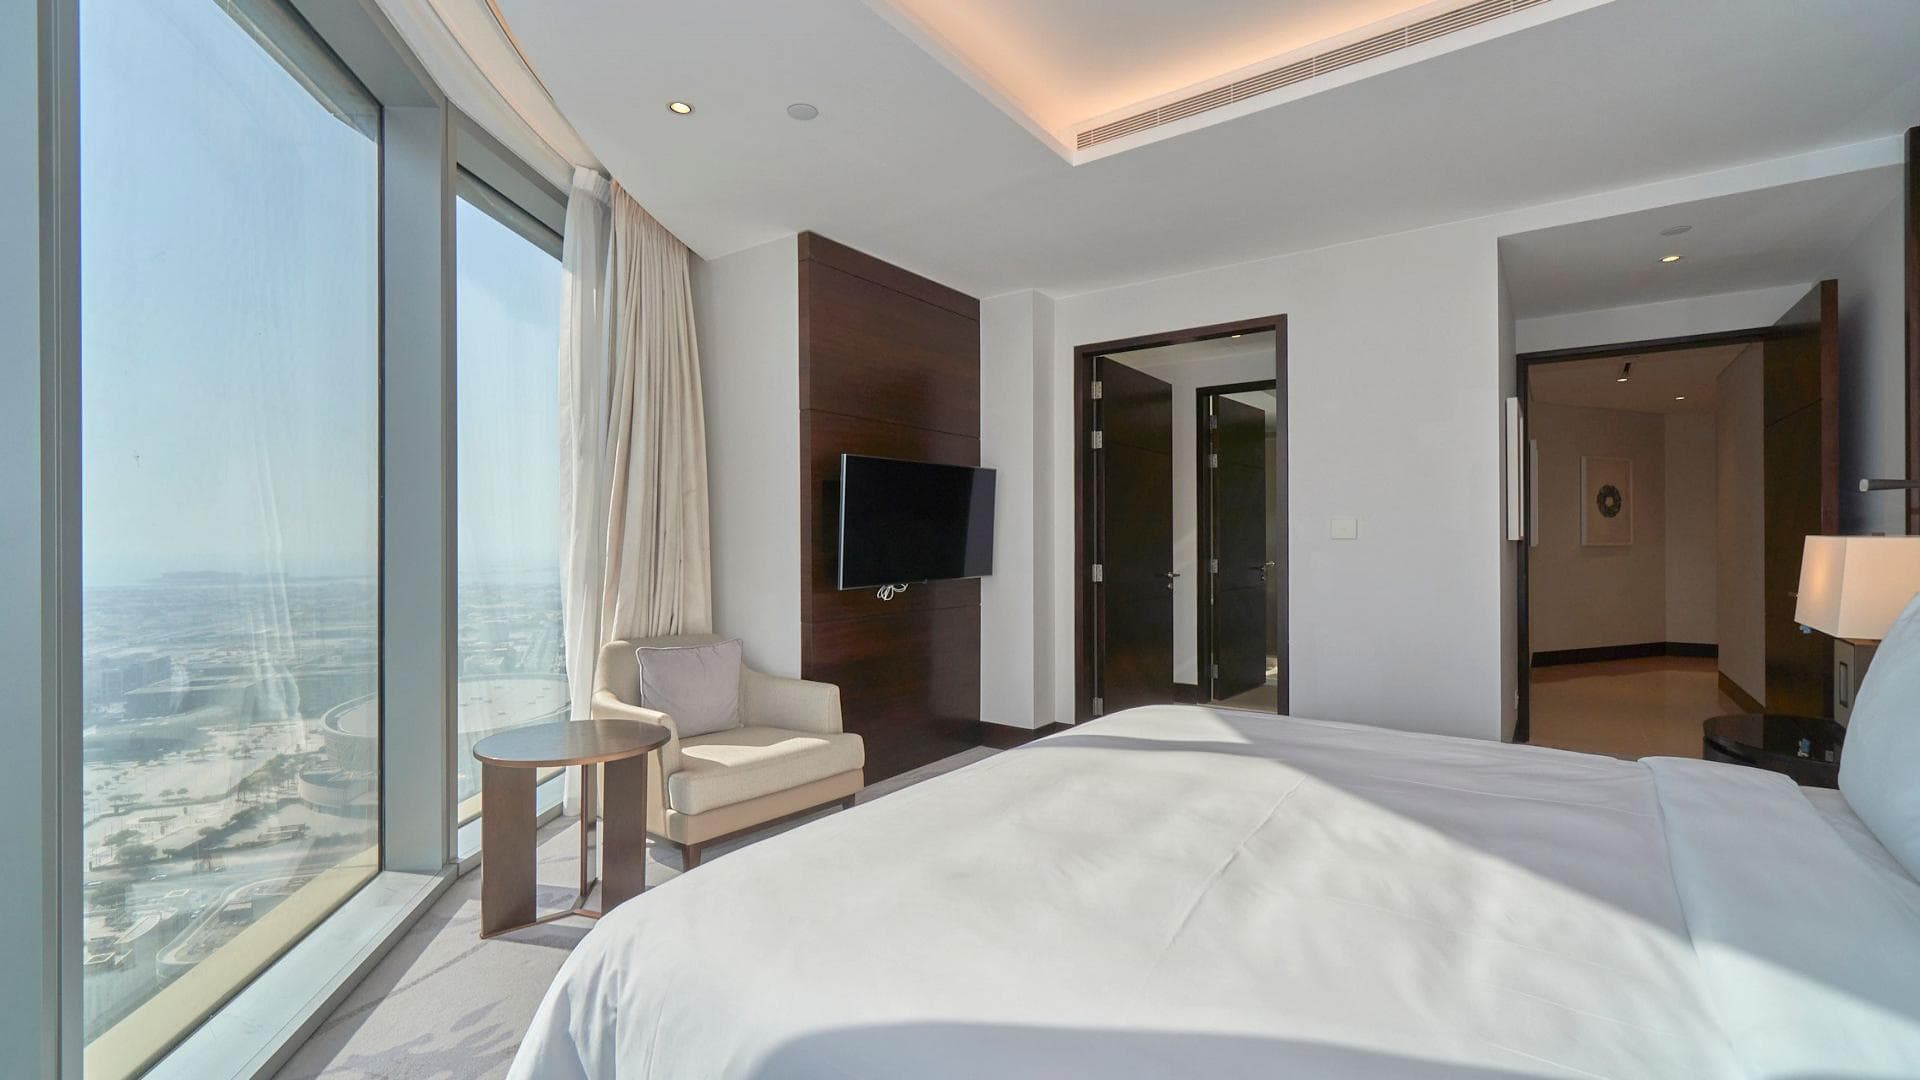 3 Bedroom Apartment For Rent Al Thamam 09 Lp36011 31c7ca6ce2a14e00.jpeg